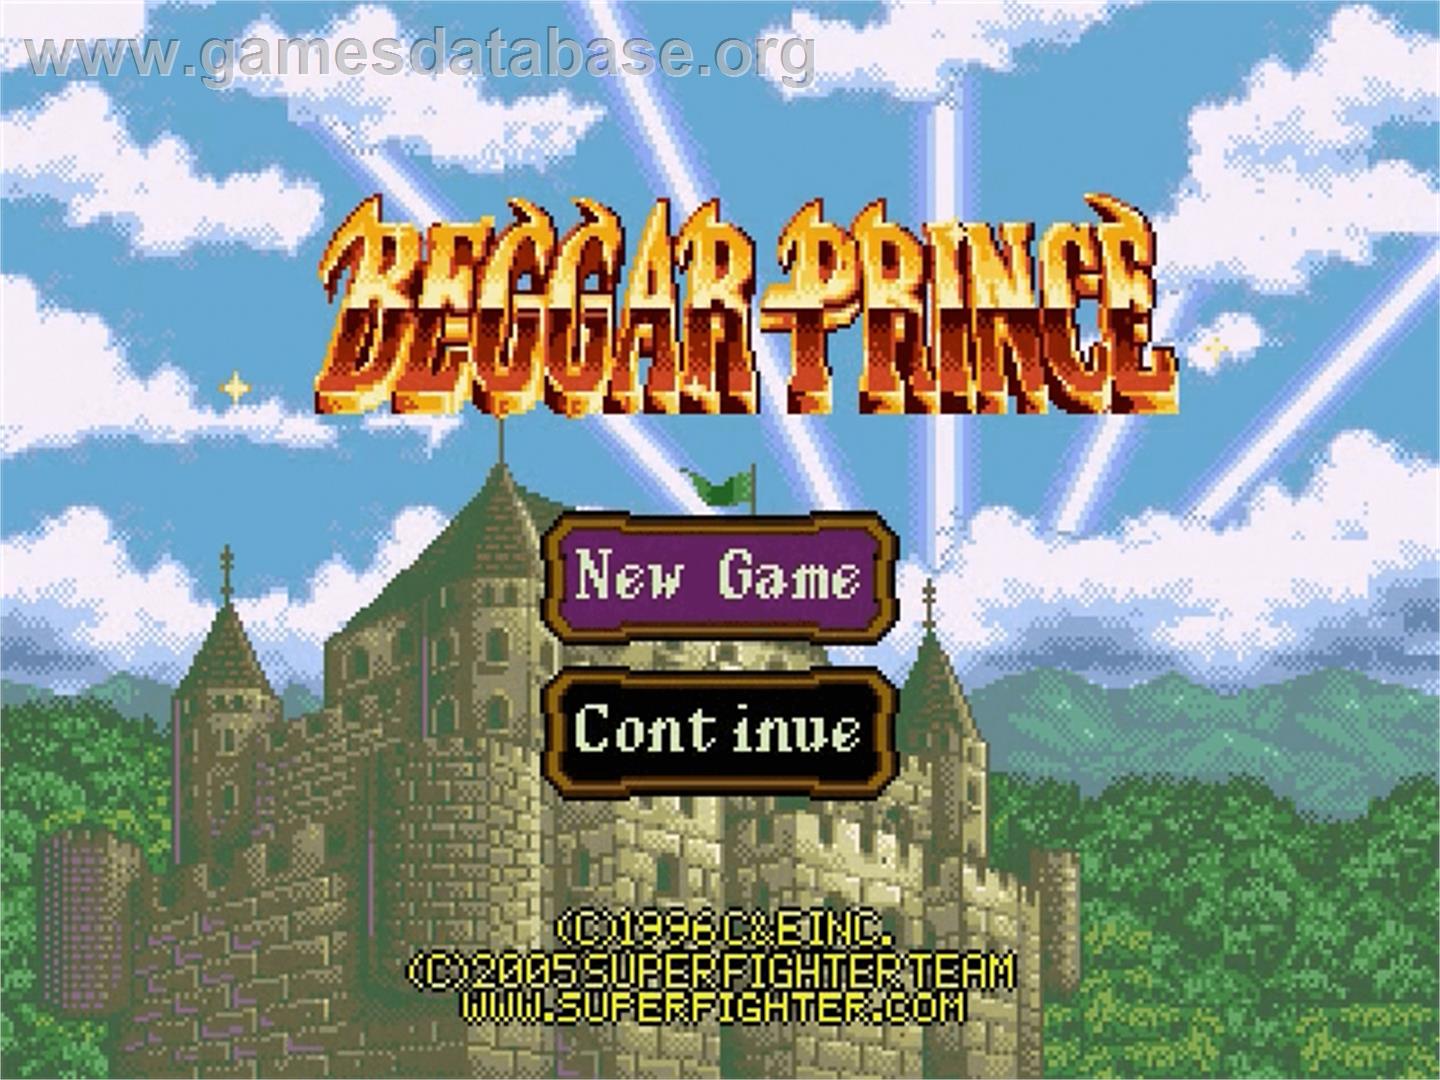 Beggar Prince - Sega Genesis - Artwork - Title Screen